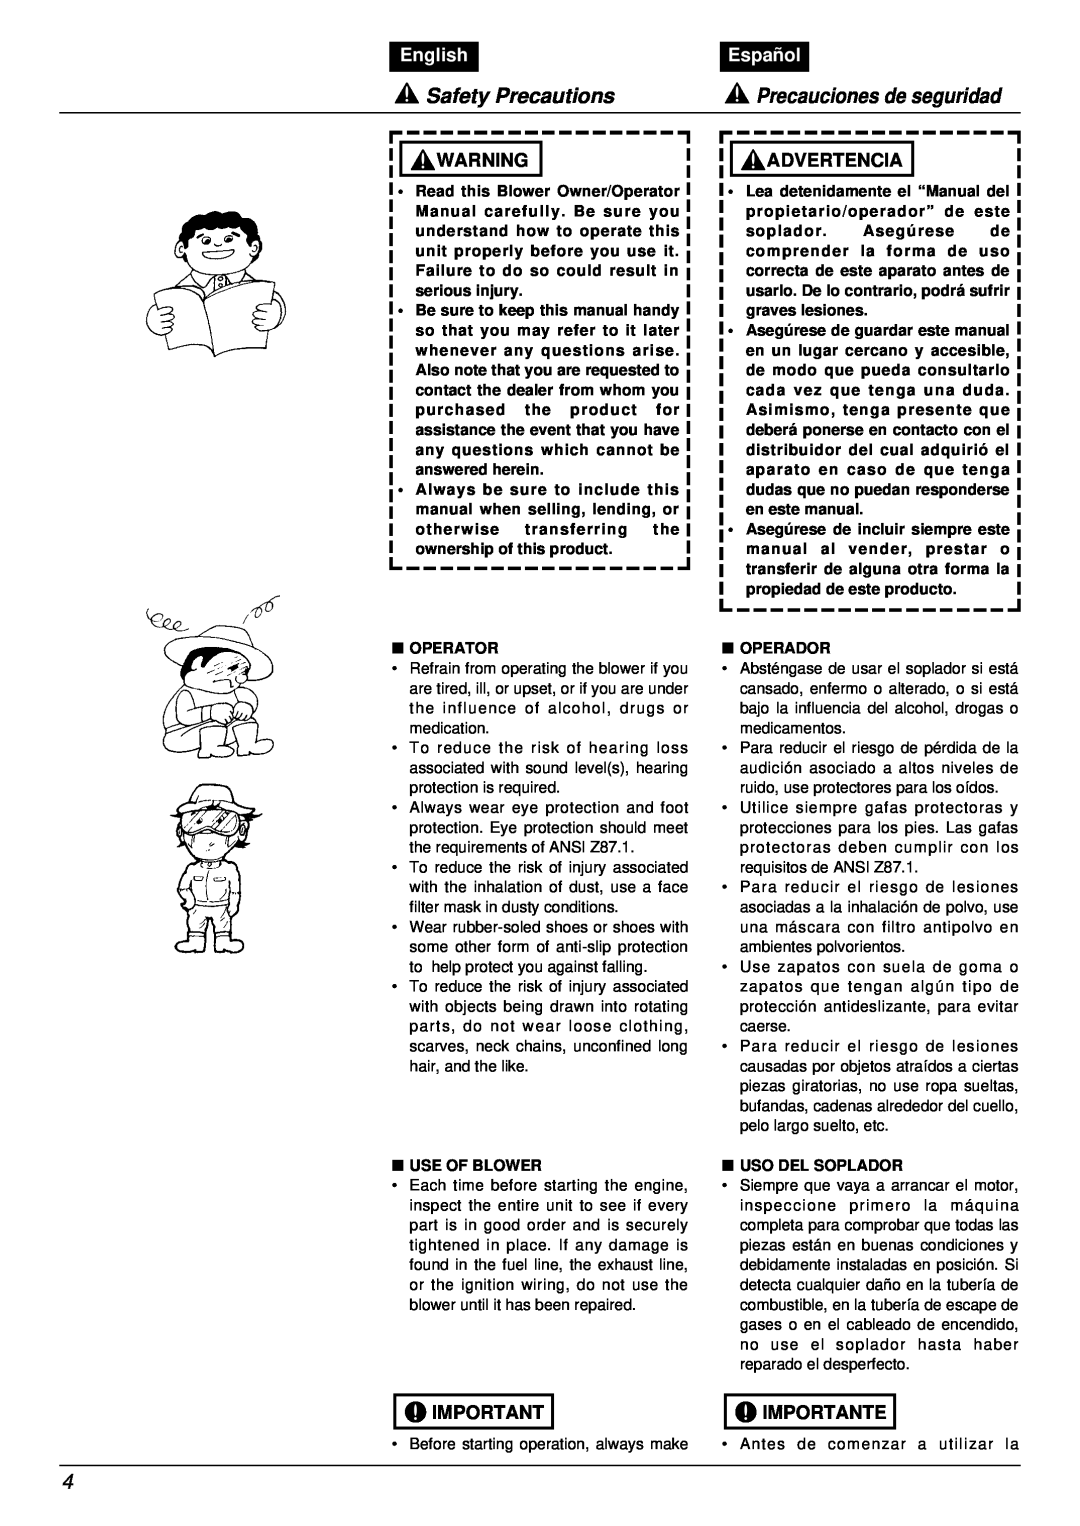 RedMax EB7001RH manual Safety Precautions, Precauciones de seguridad, English, Español, Advertencia, Importante 